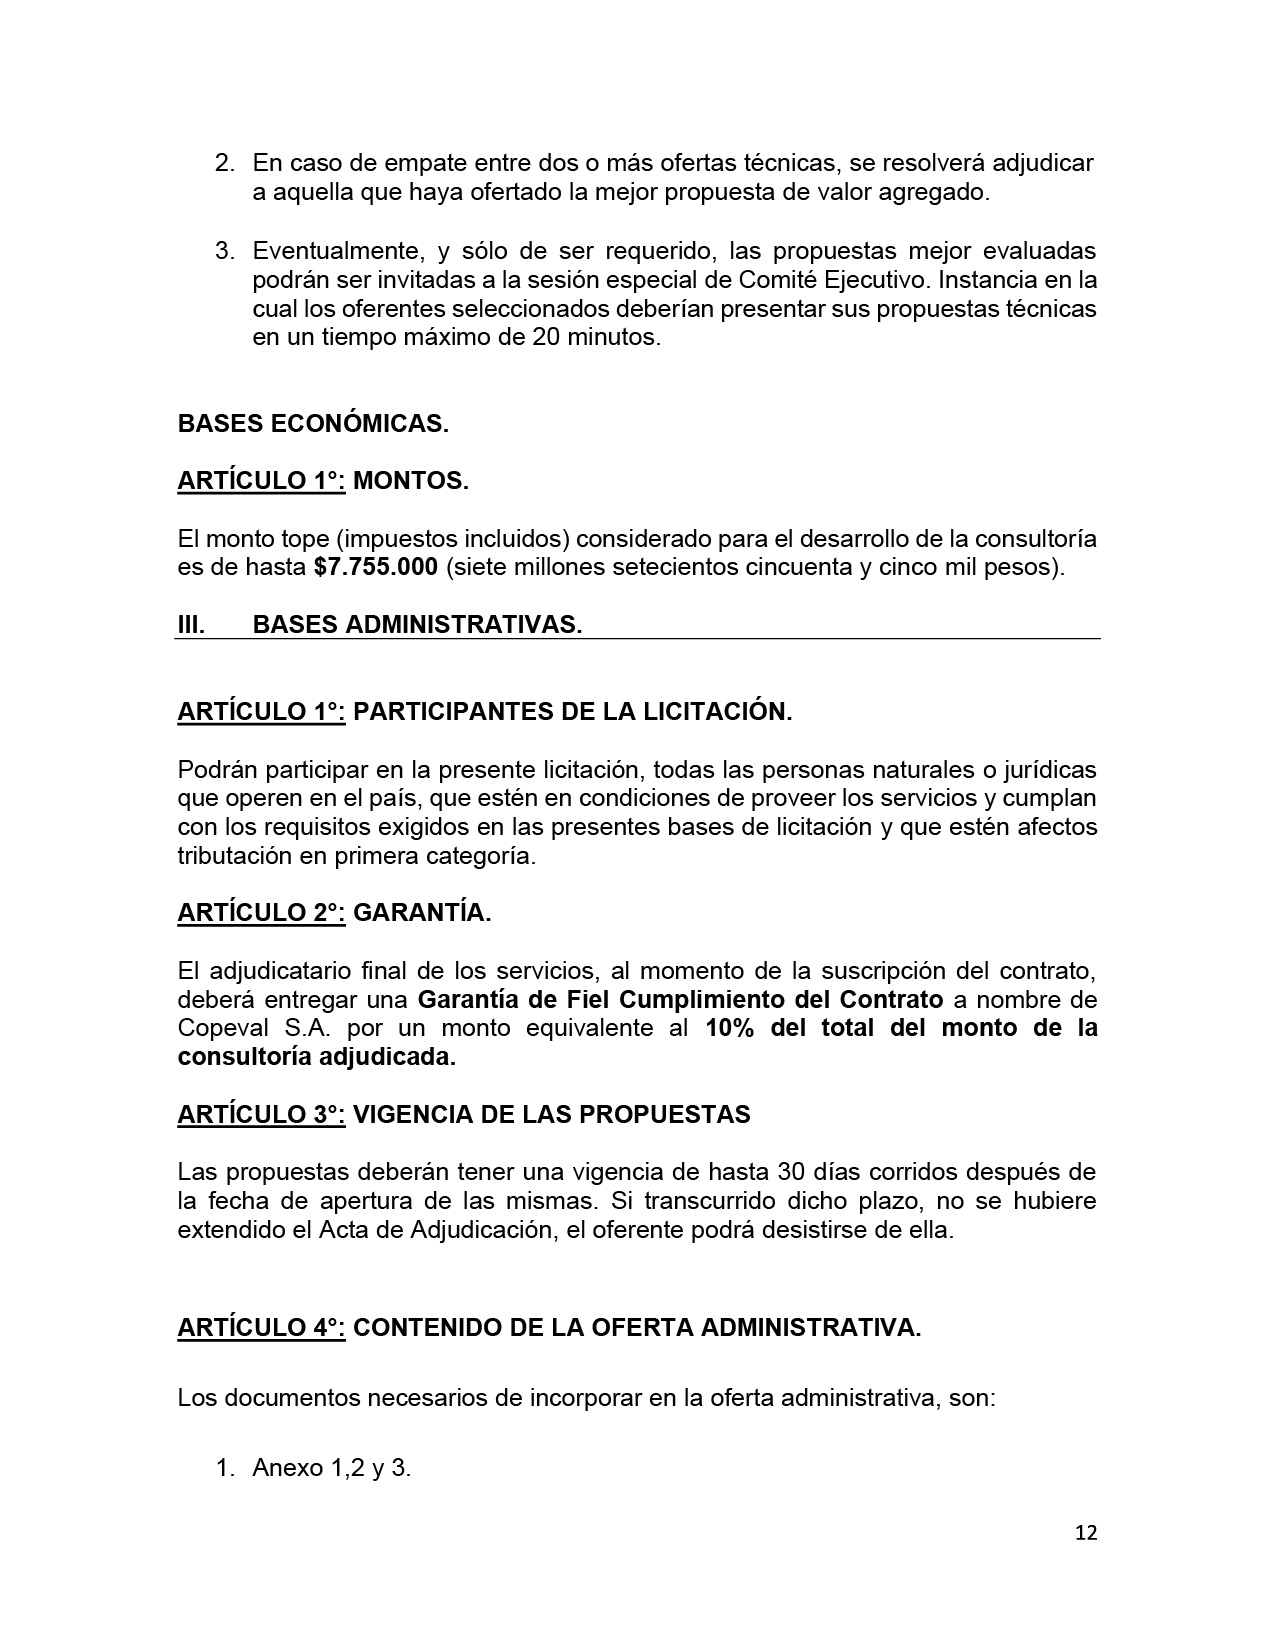 TDR Consultoría Empresas Puertas Abiertas V3-12